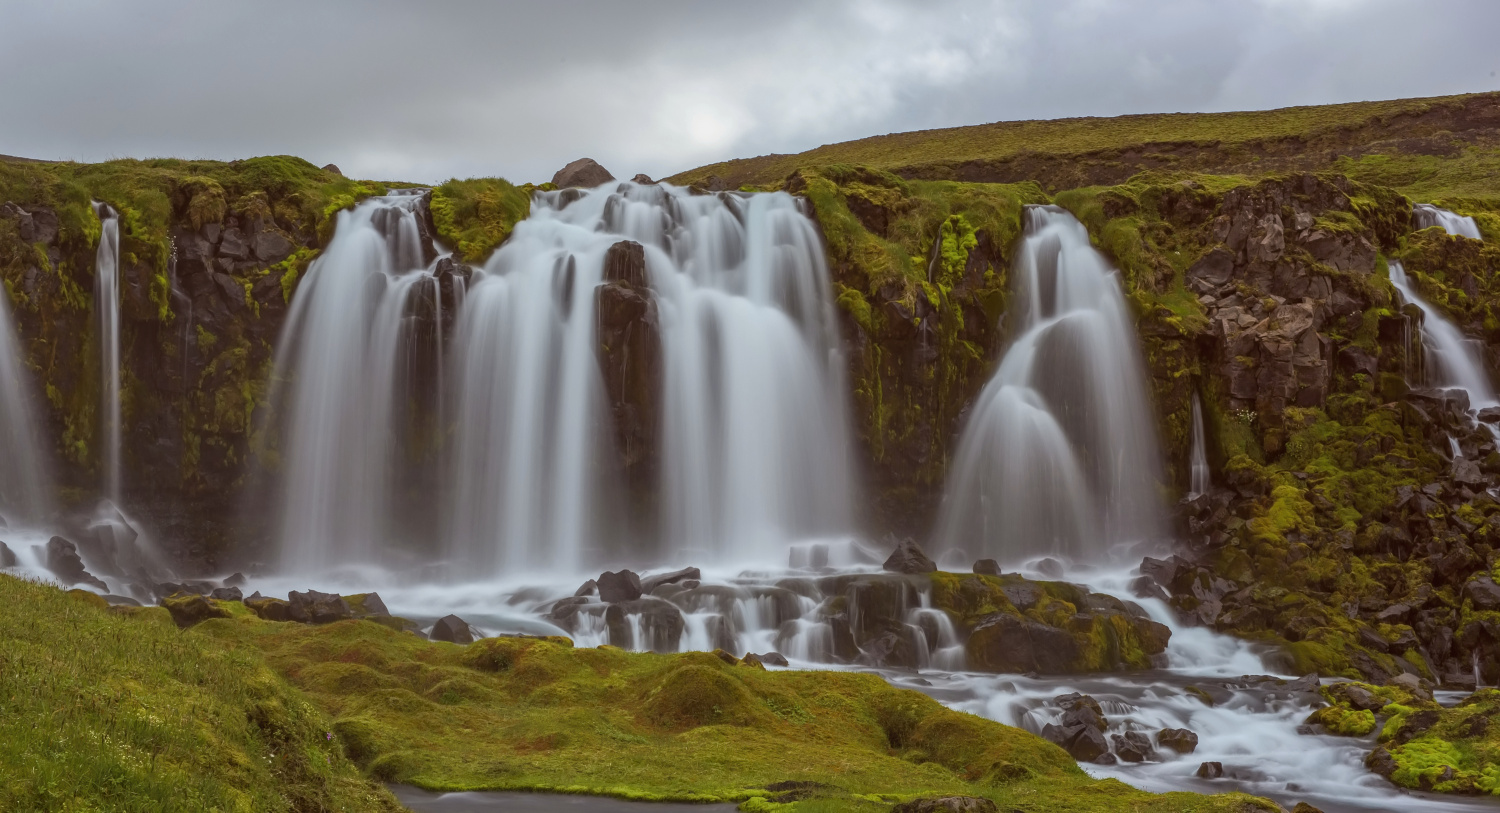 The Bláfjallakvísl Waterfall (Iceland)